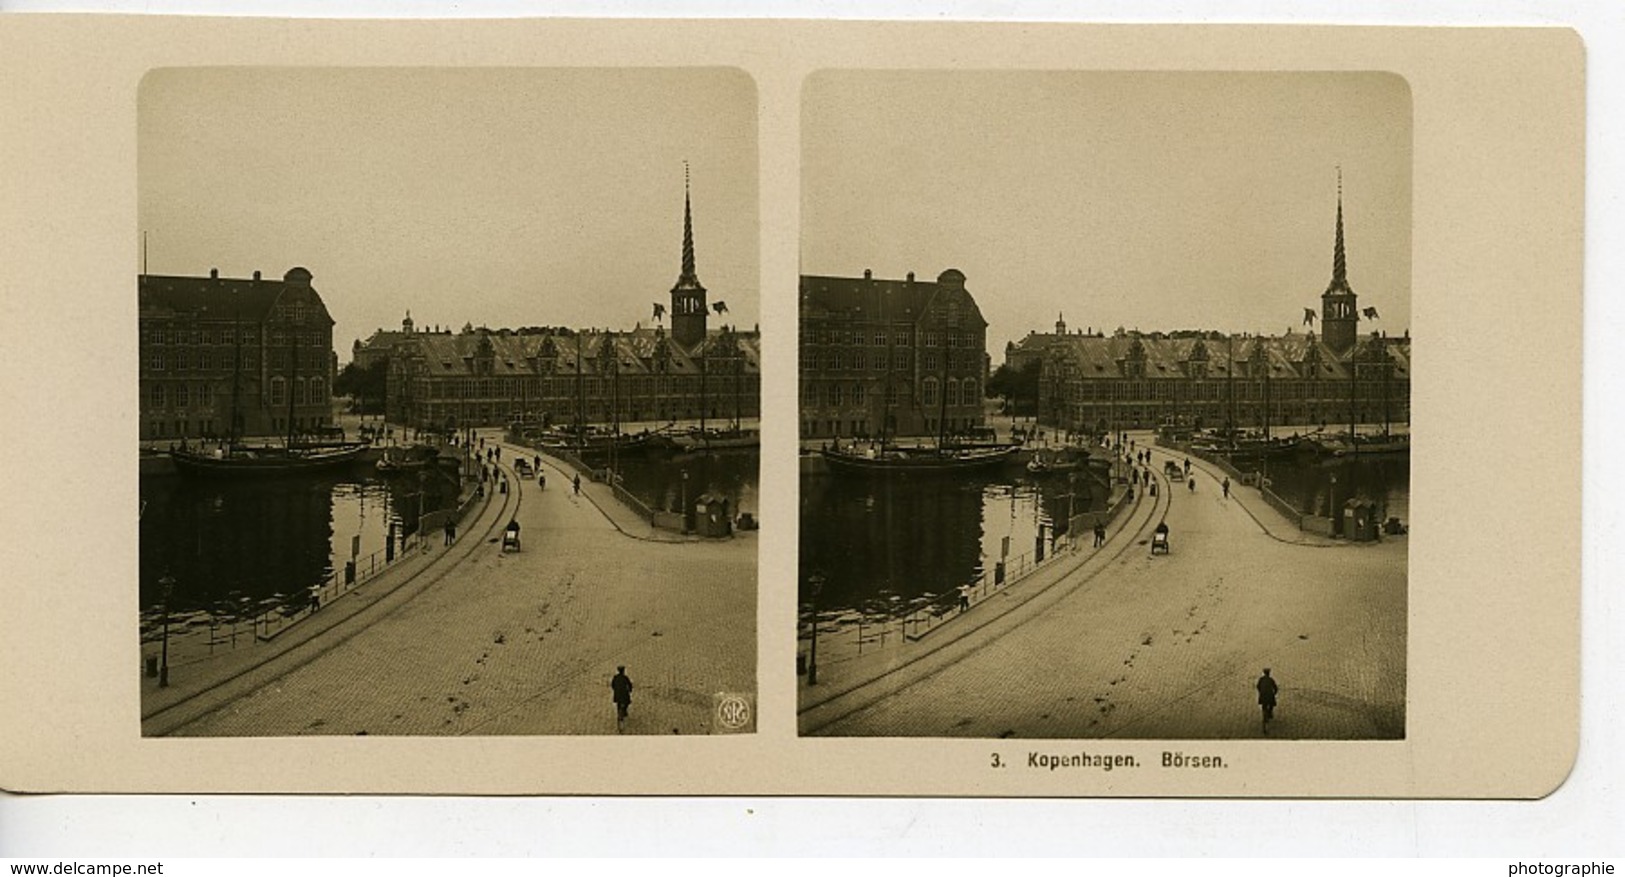 Danemark Copenhague Borsen Bourse Ancienne Photo Stereo NPG 1900 - Photos Stéréoscopiques